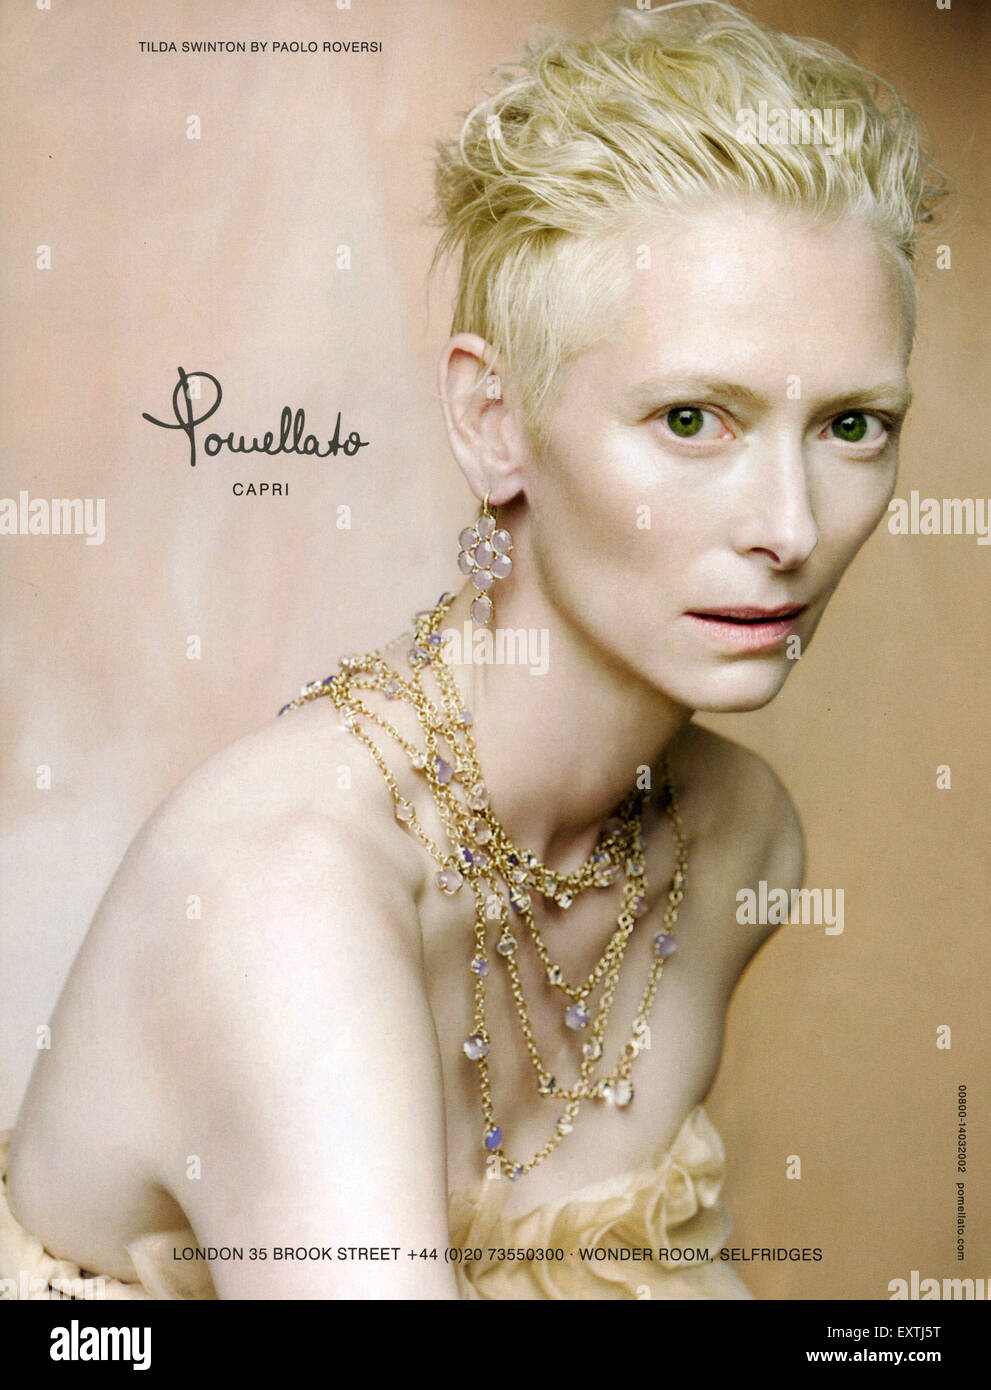 2010S UK Pomellato Magazine annuncio pubblicitario Foto Stock